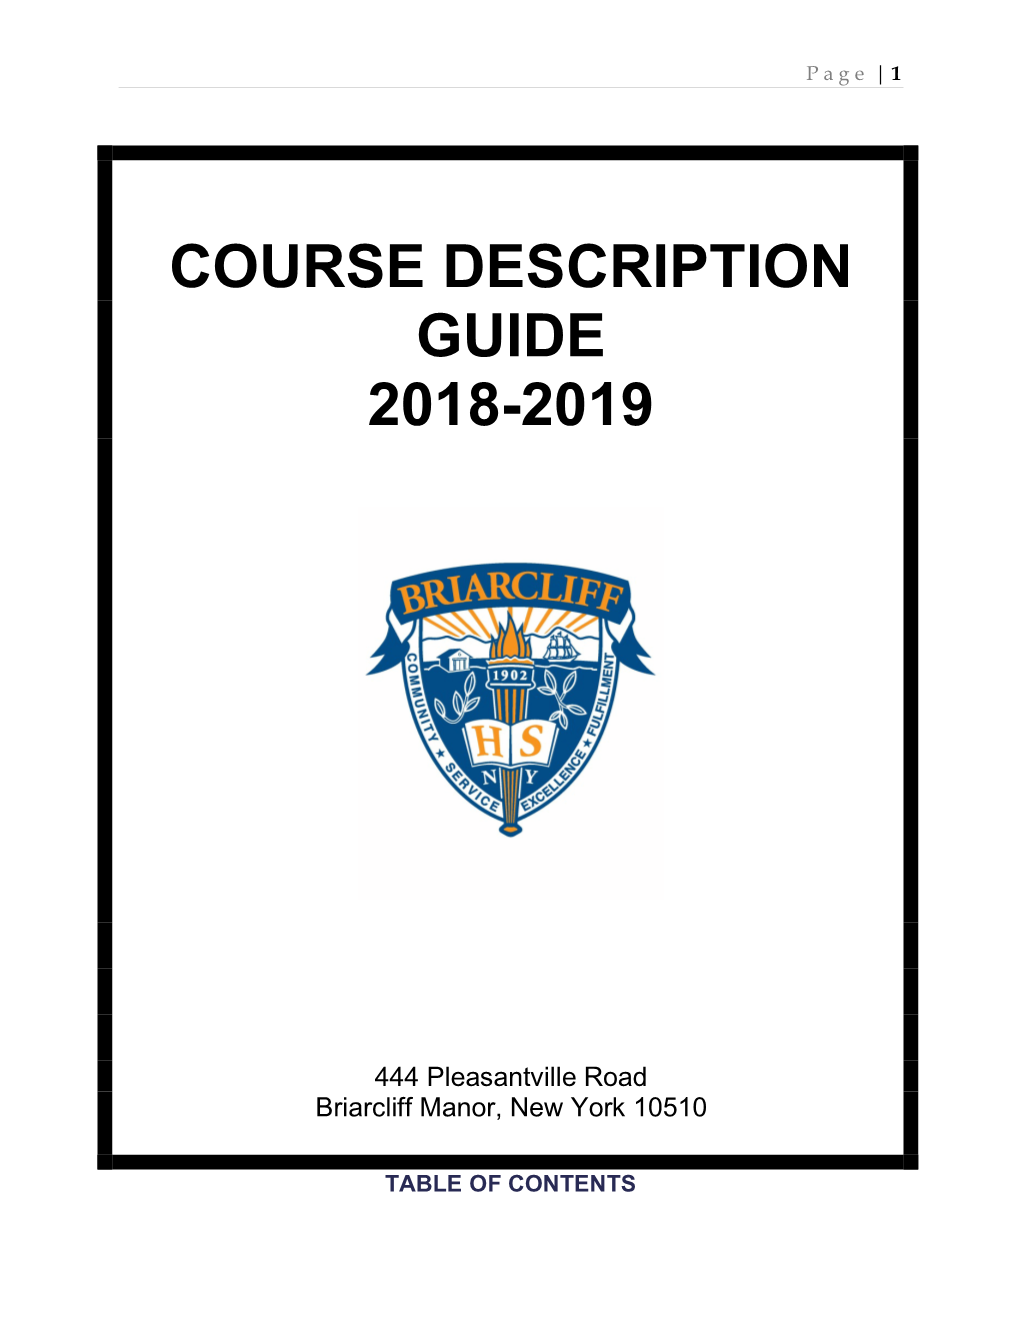 Course Description Guide 2018-2019